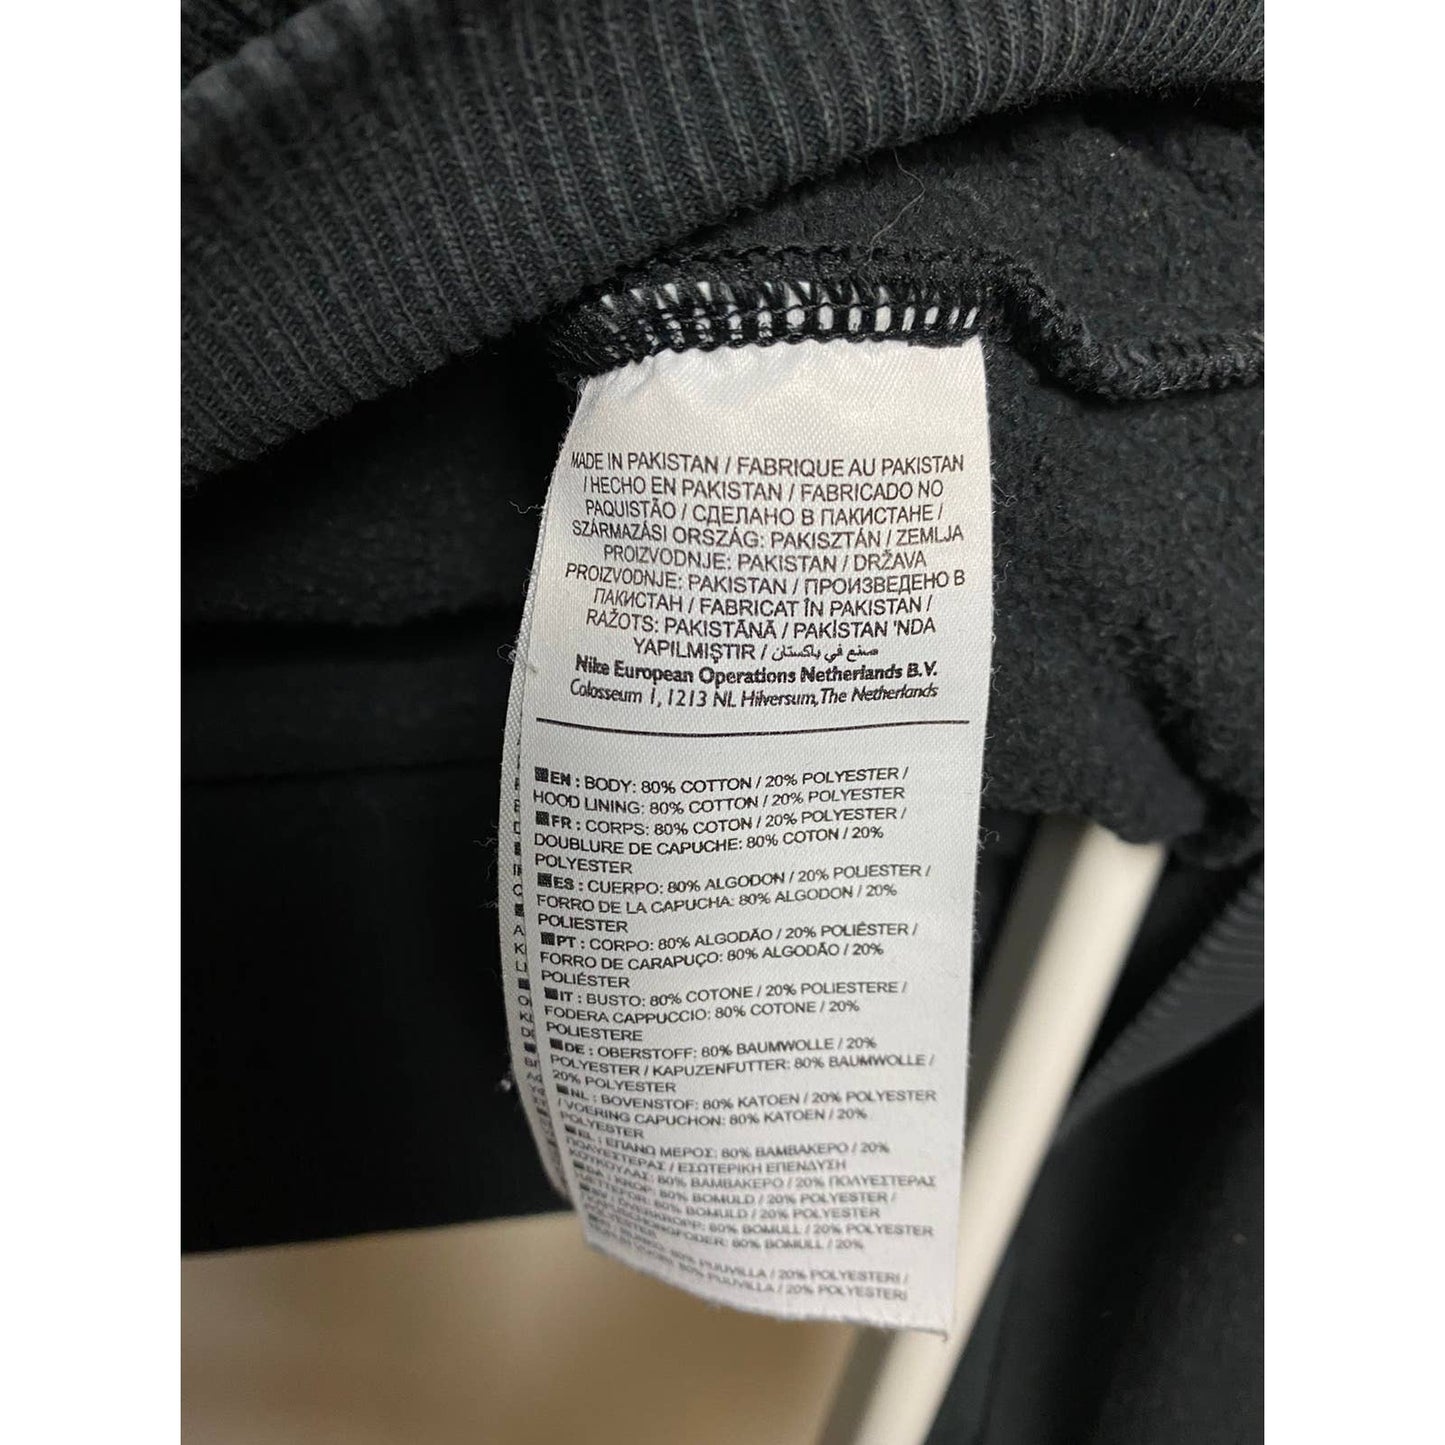 Nike vintage black zip hoodie small swoosh